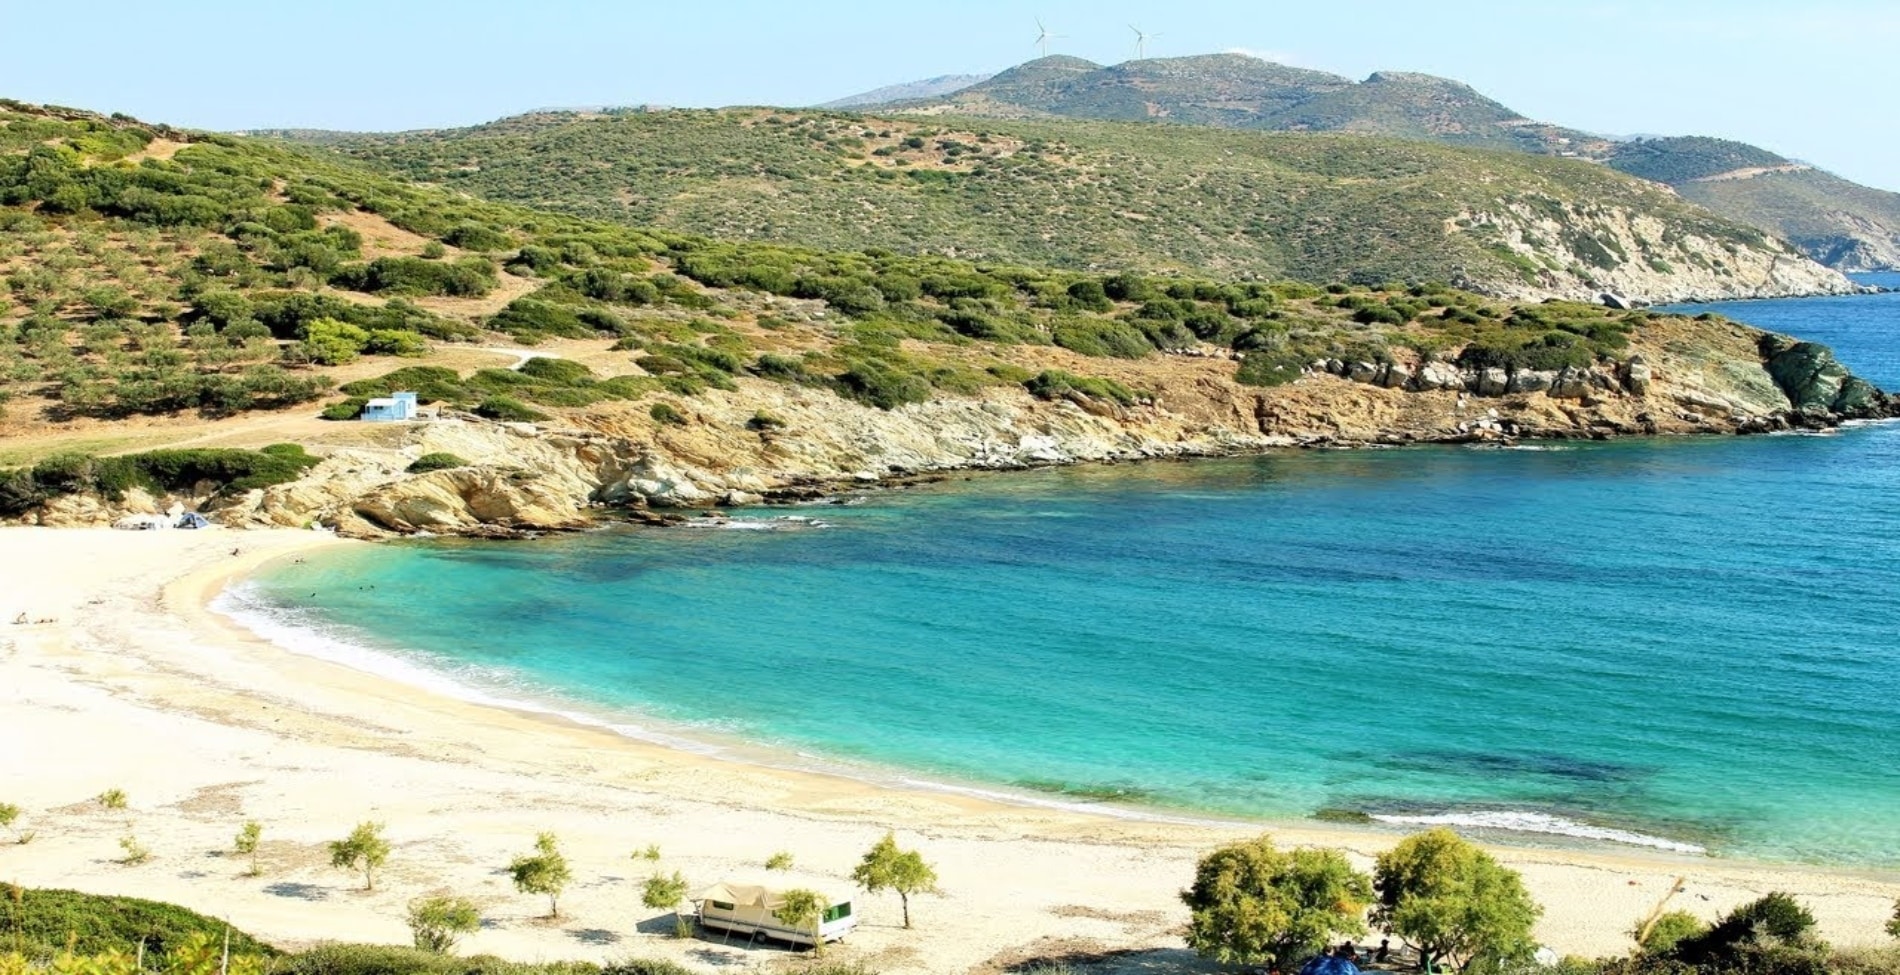 Χερόμυλος: Η εξωτική παραλία του Αιγαίου που πας οδικώς από την Αθήνα1